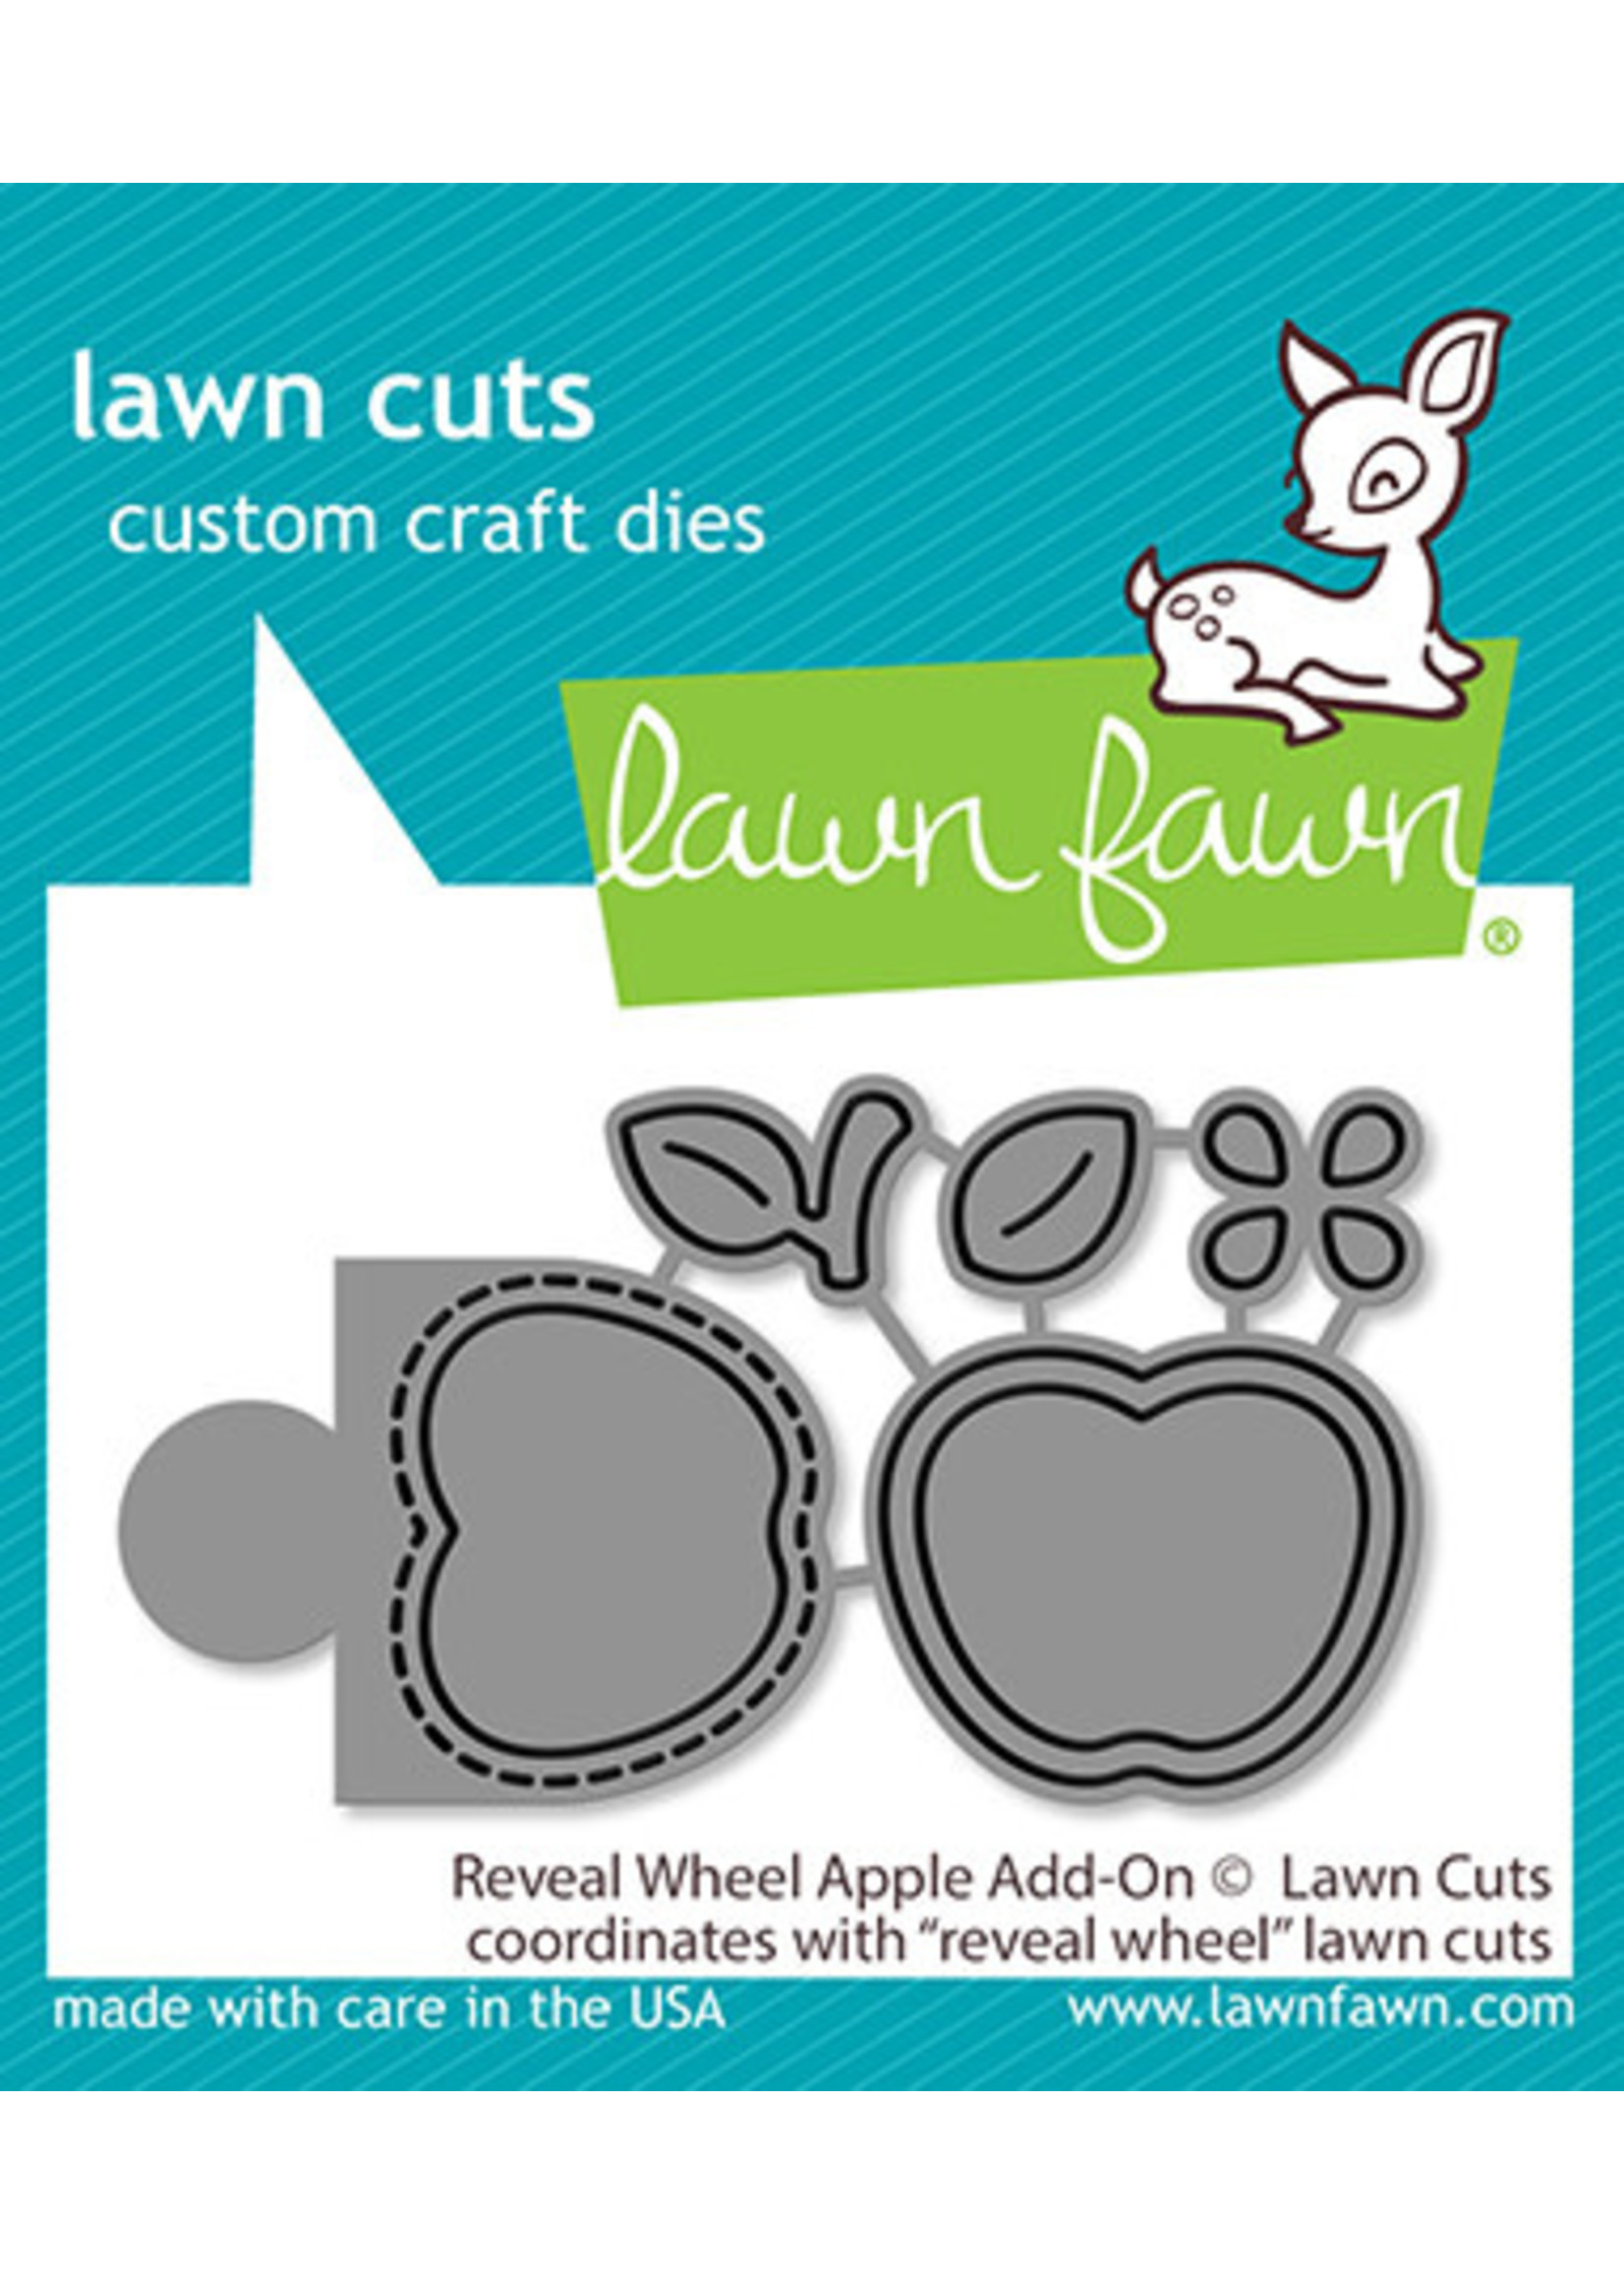 Lawn Fawn reveal wheel apple add-on die